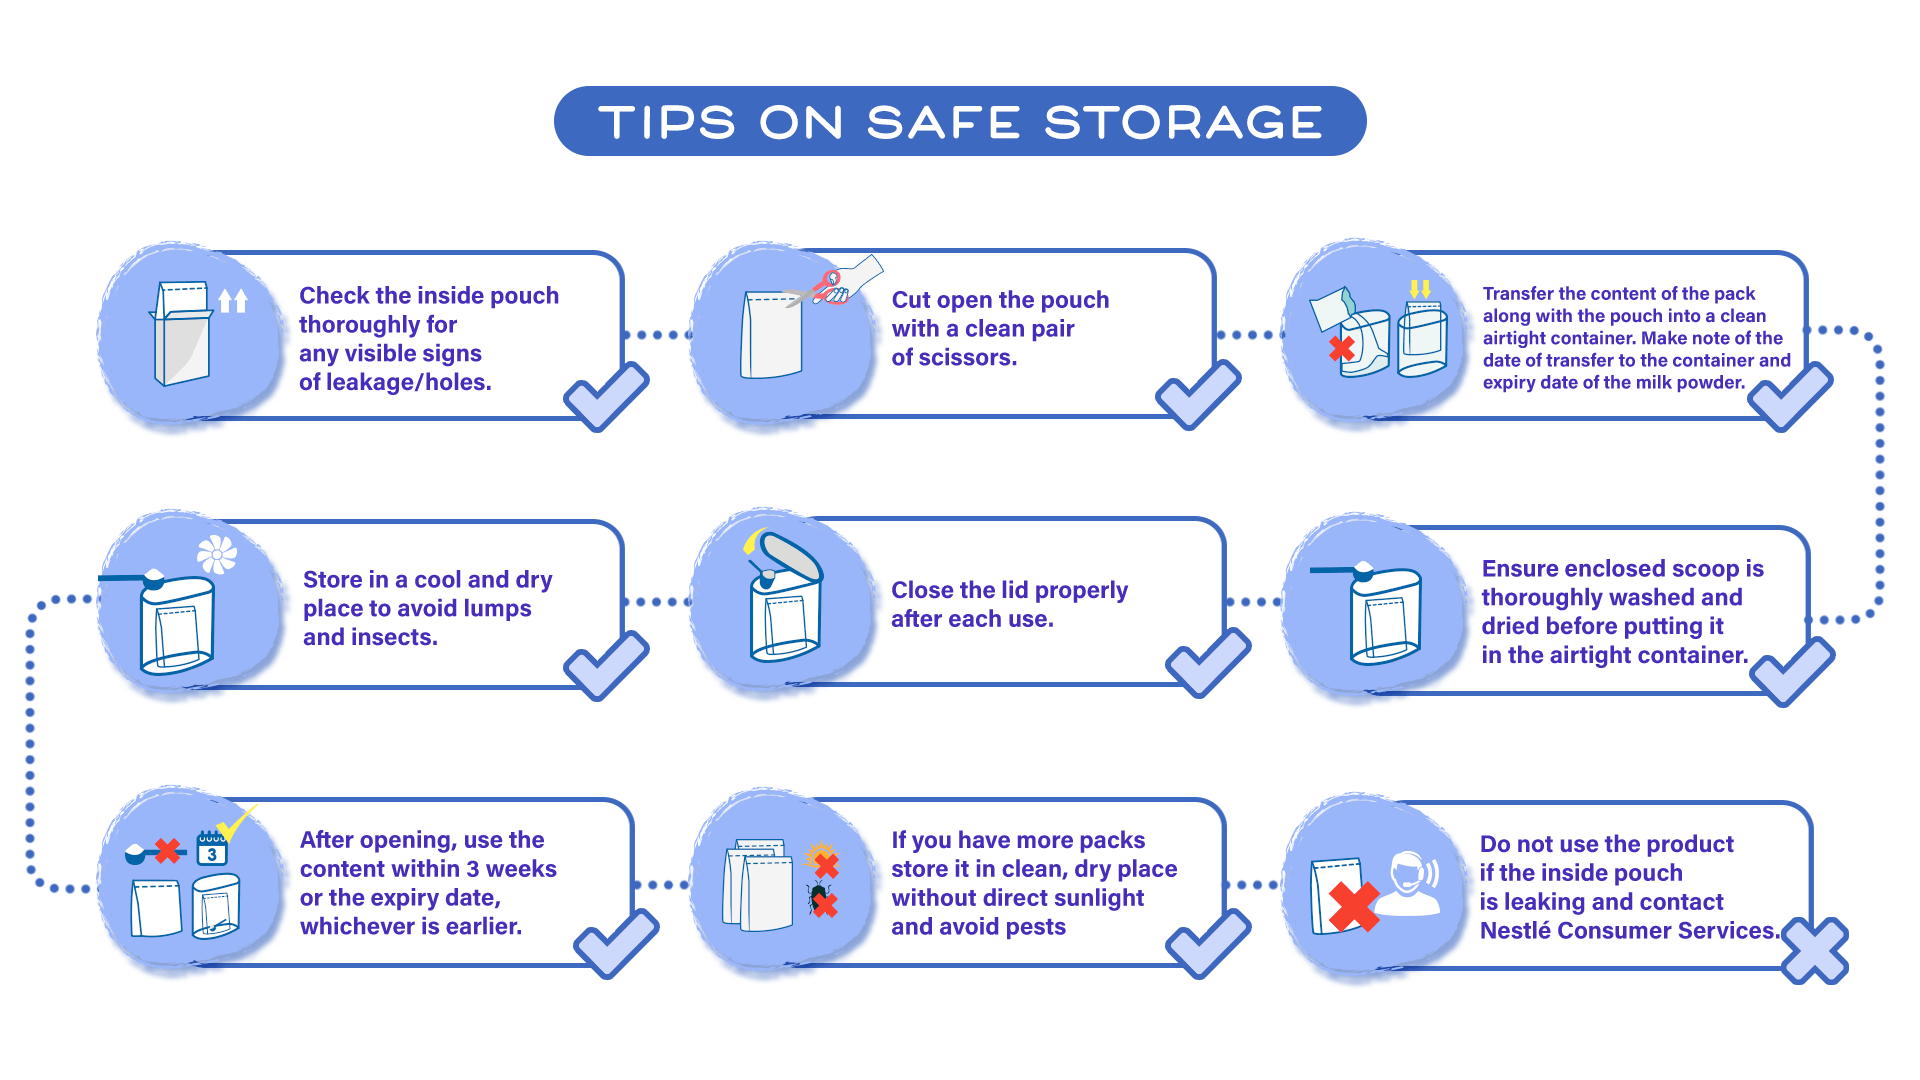 Tips on safe storage